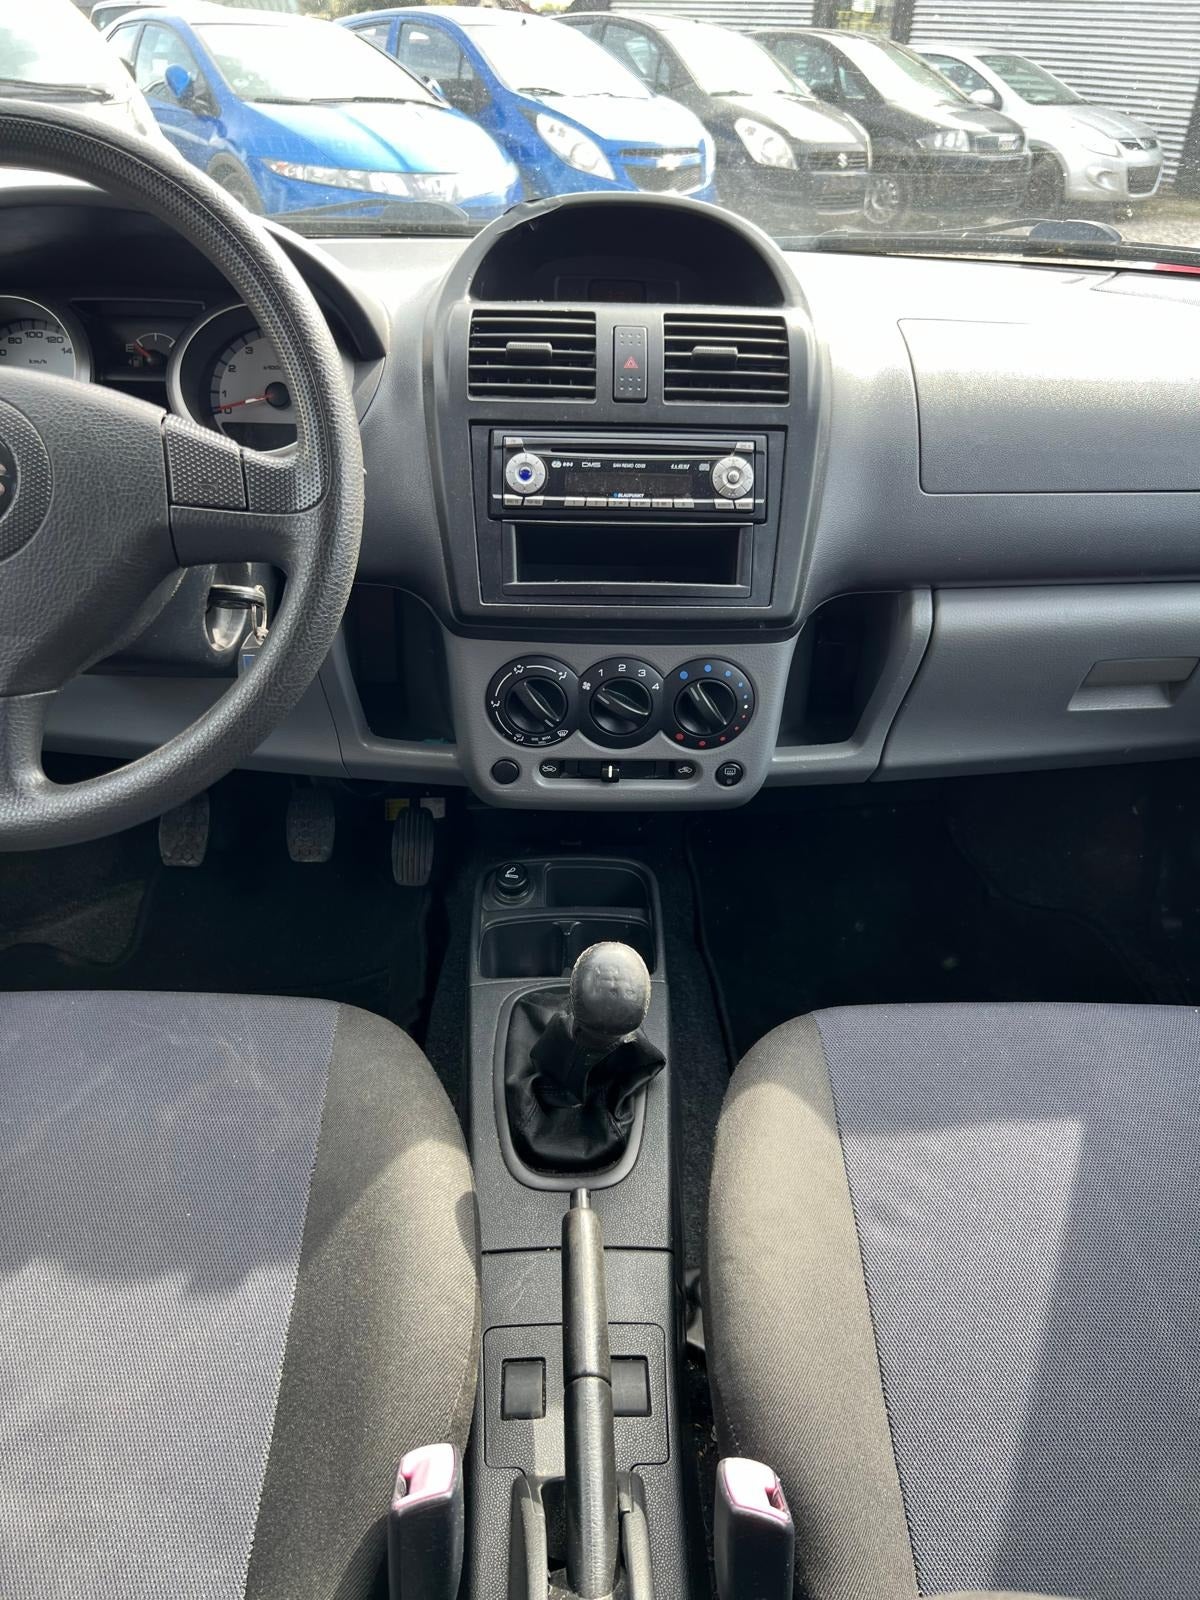 Suzuki Ignis 1,3 GL Benzin modelår 2004 km 107000 ABS airbag